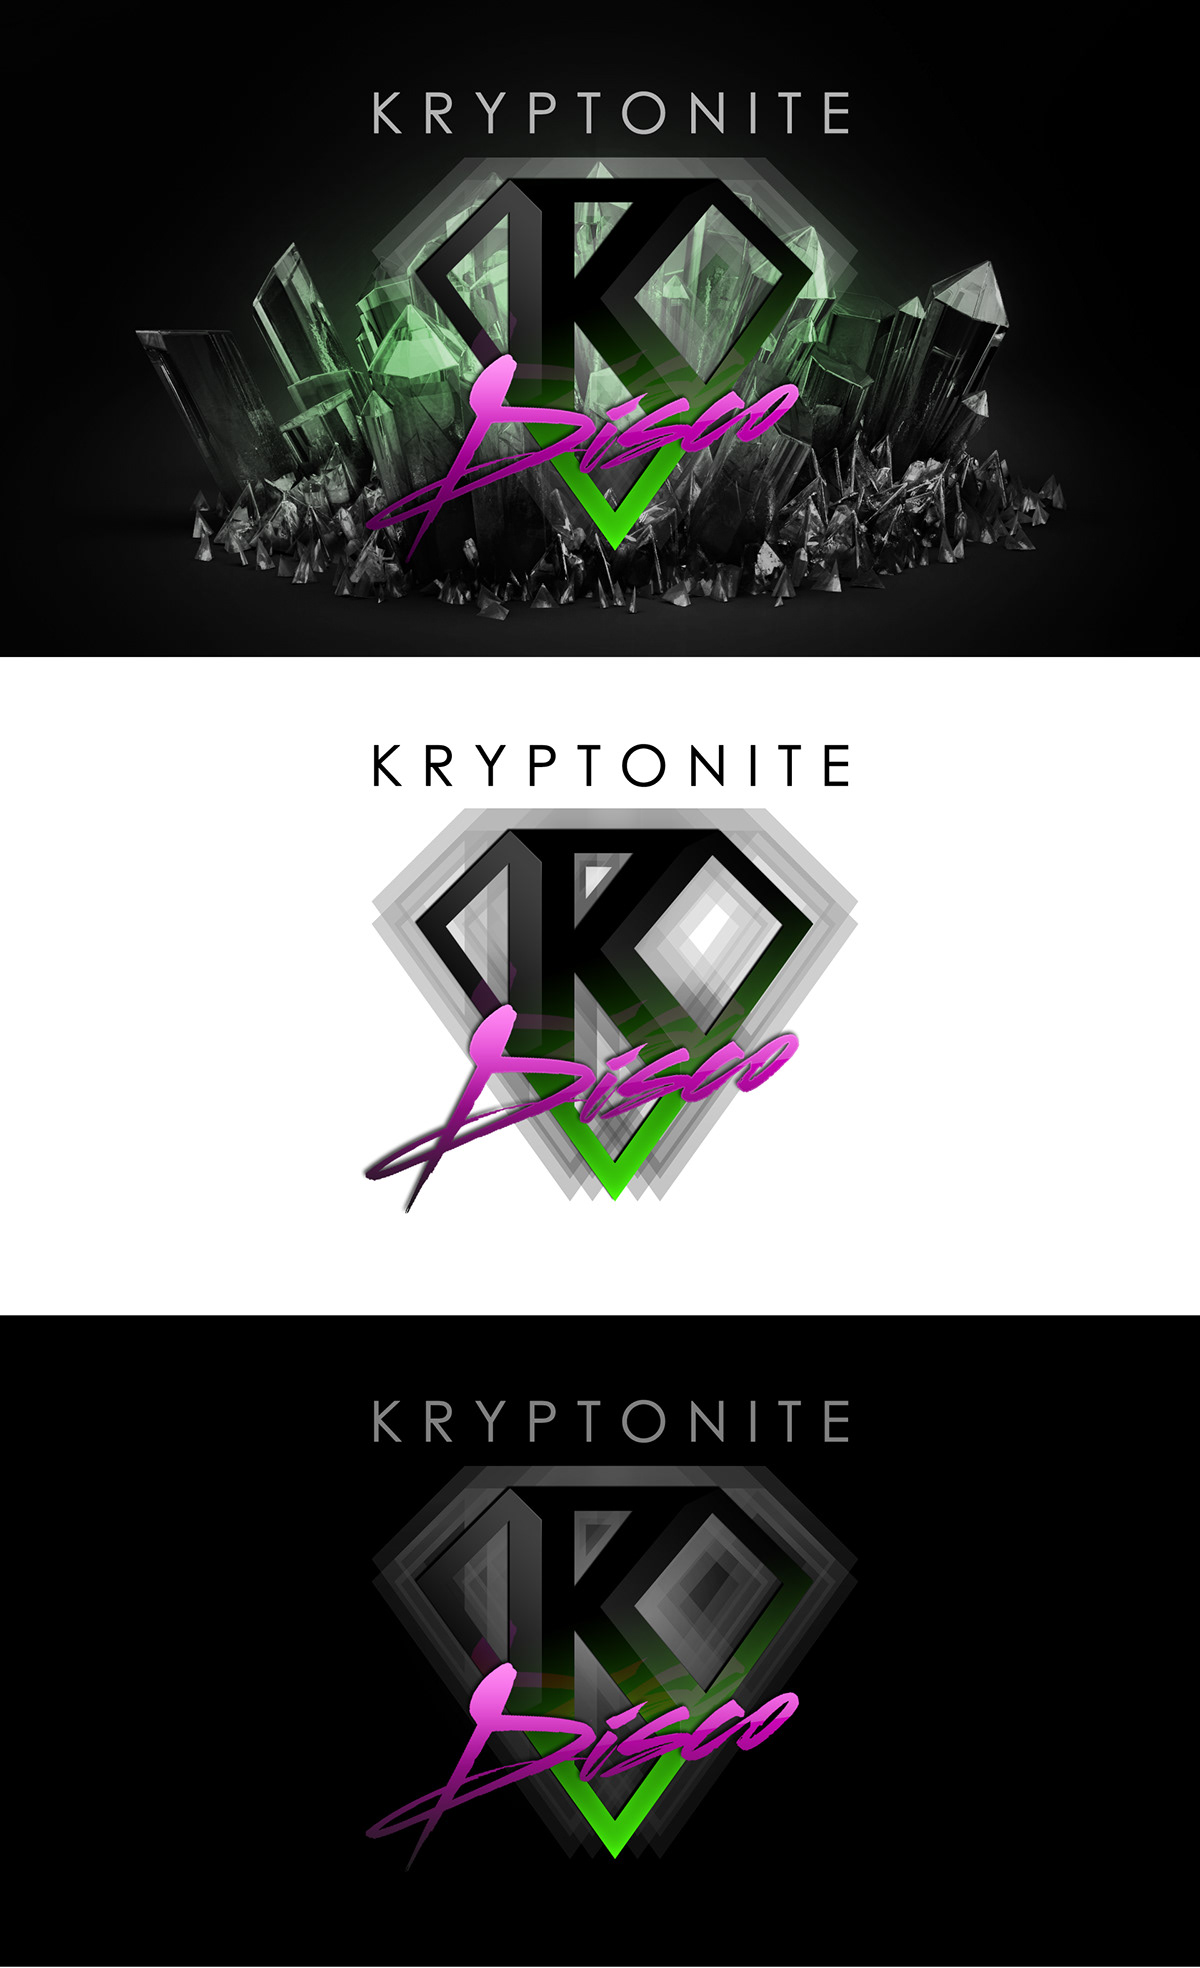 KRYPTONITE DISCO electro logo